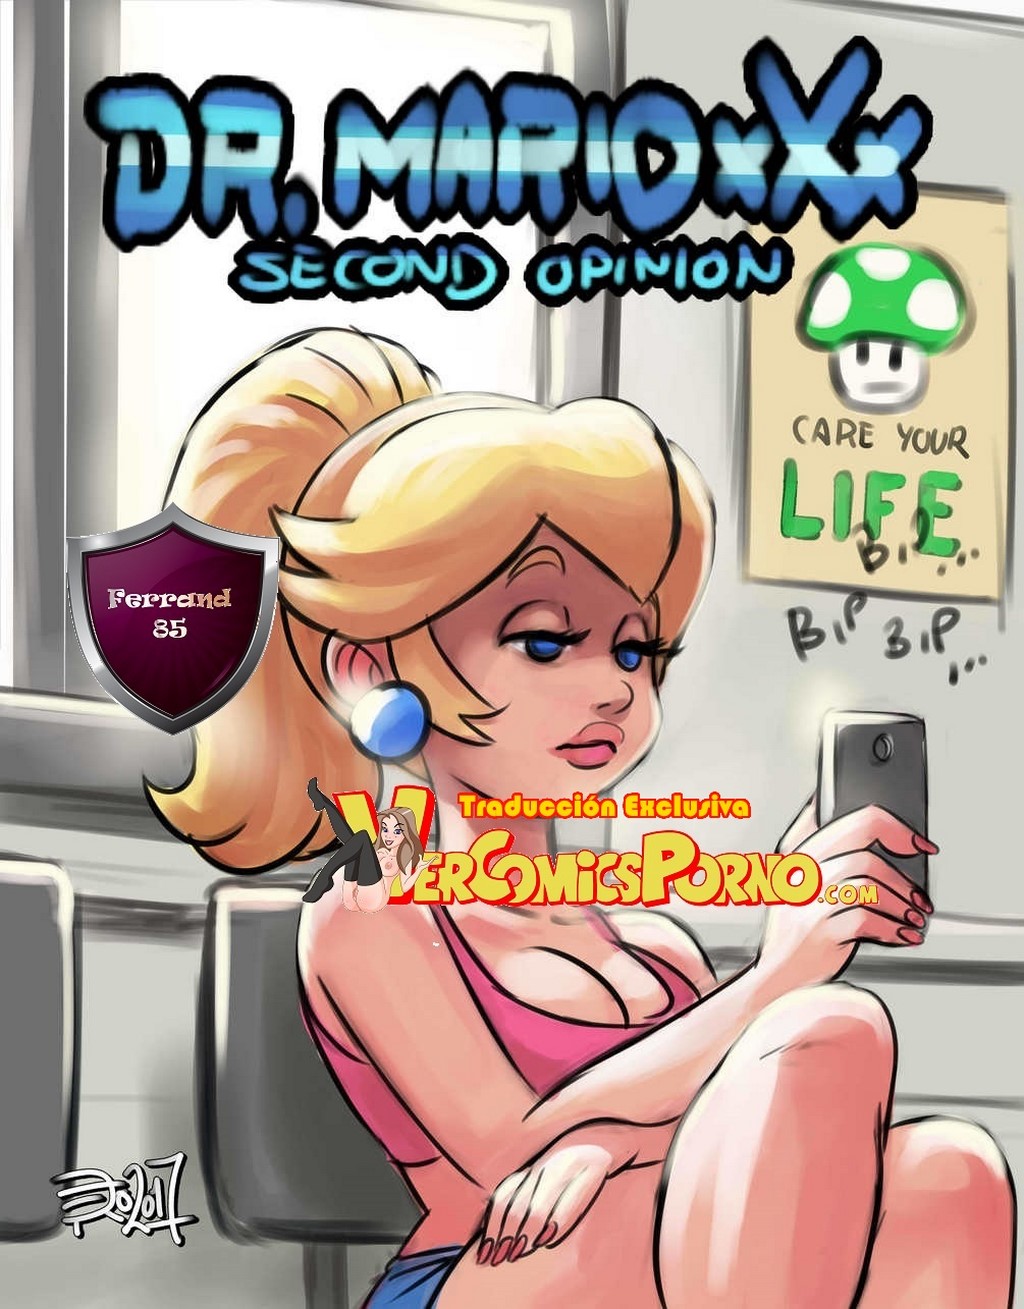 Xxxxx Bip - Dr Mario xxx y la princesa Peach follando - Vercomicsporno